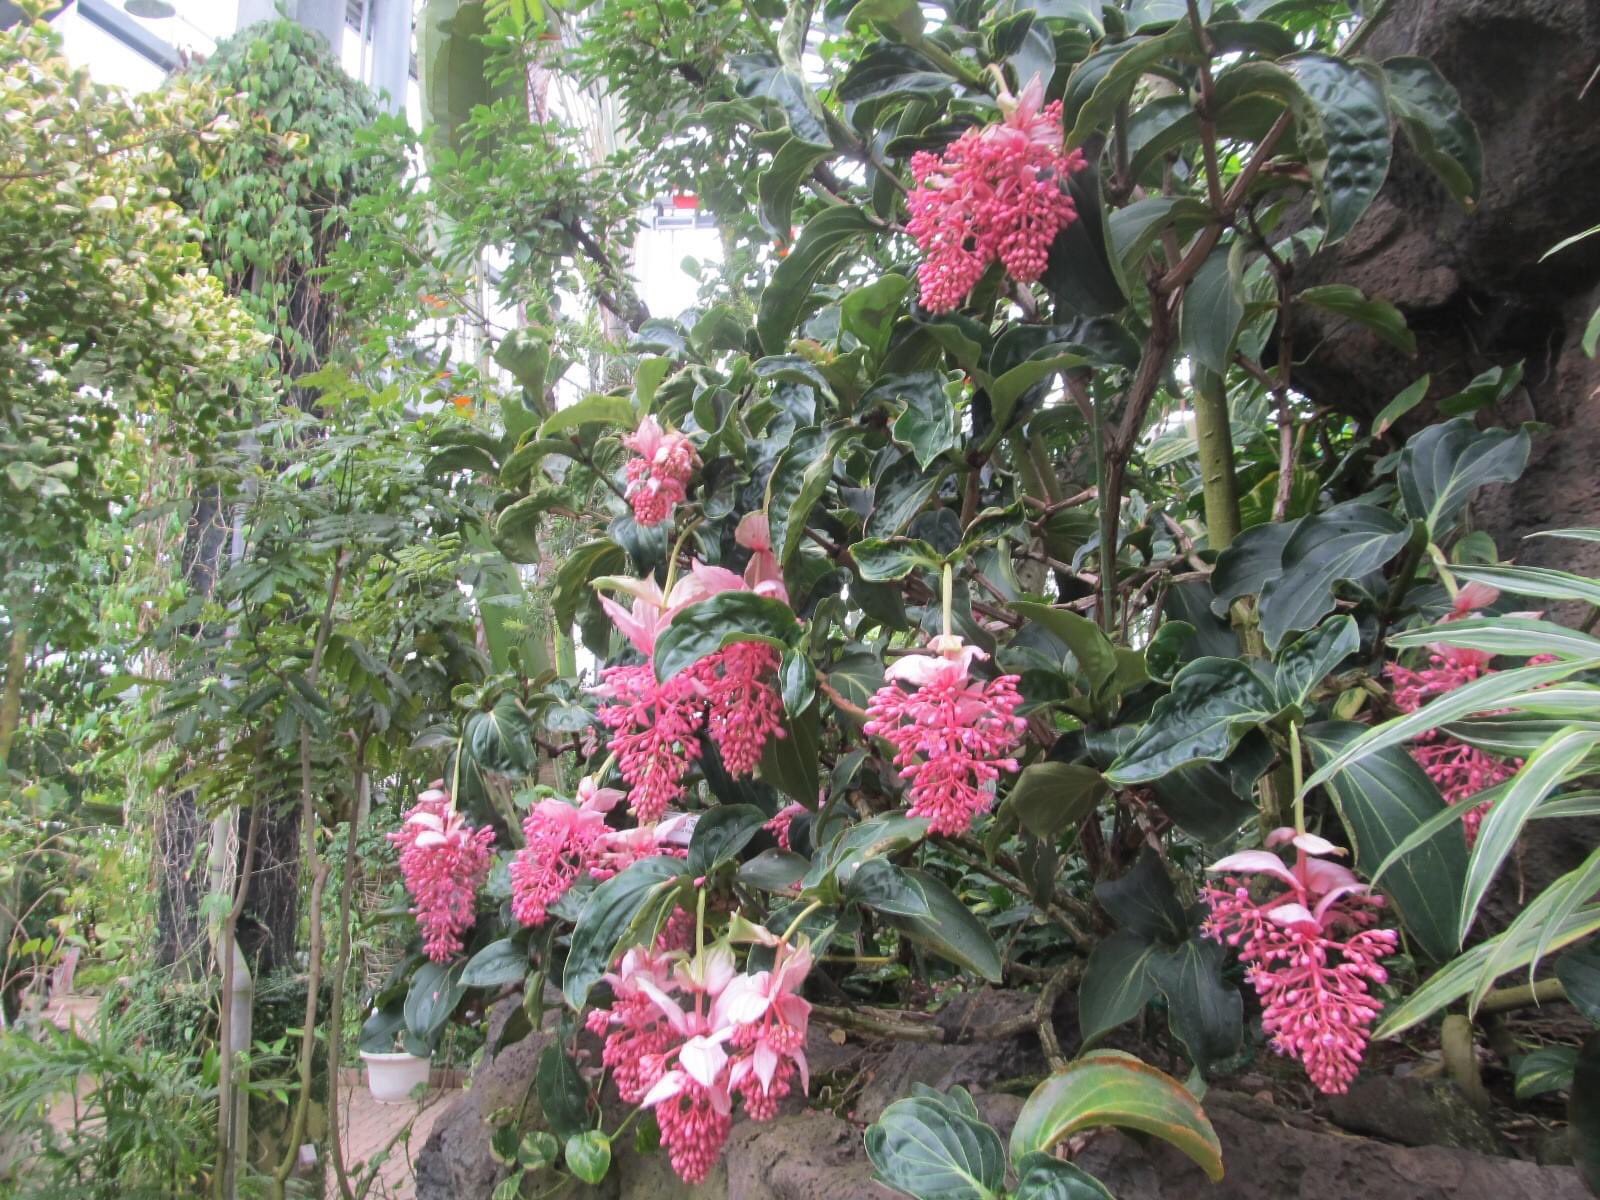 茨城県植物園 ワンチーム茨城 本日から 熱帯植物館が開館します 昨日 館内で咲いていた花などをポストします 植物 花 熱帯植物 植物園の初夏 T Co kuj4uk0u Twitter